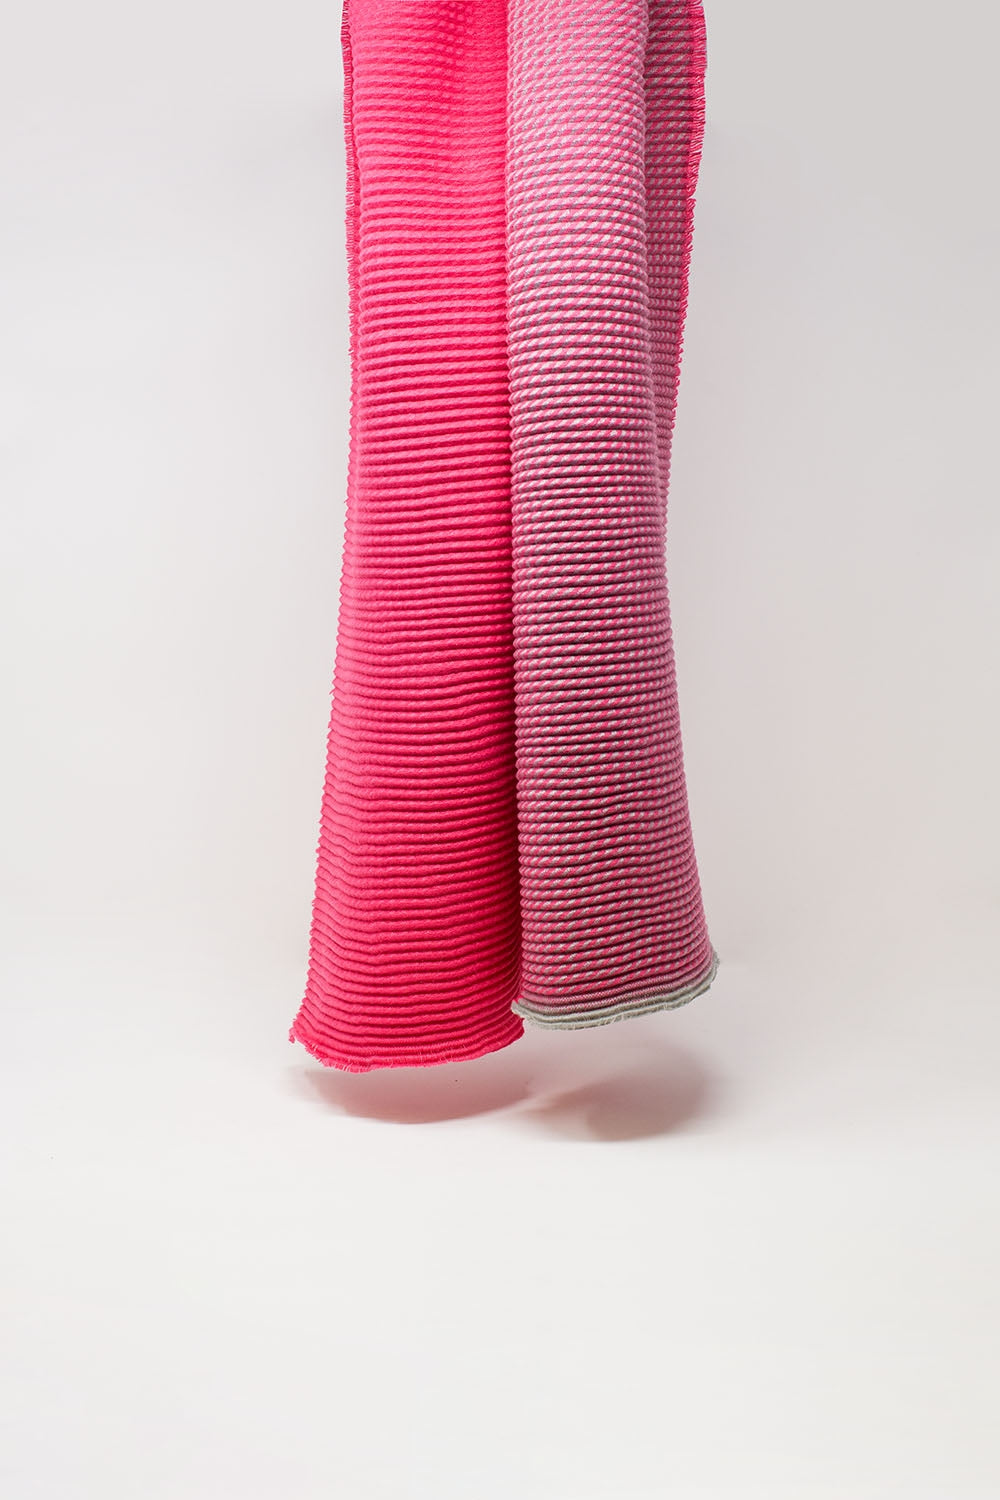 Roze sjaal met geruitte details